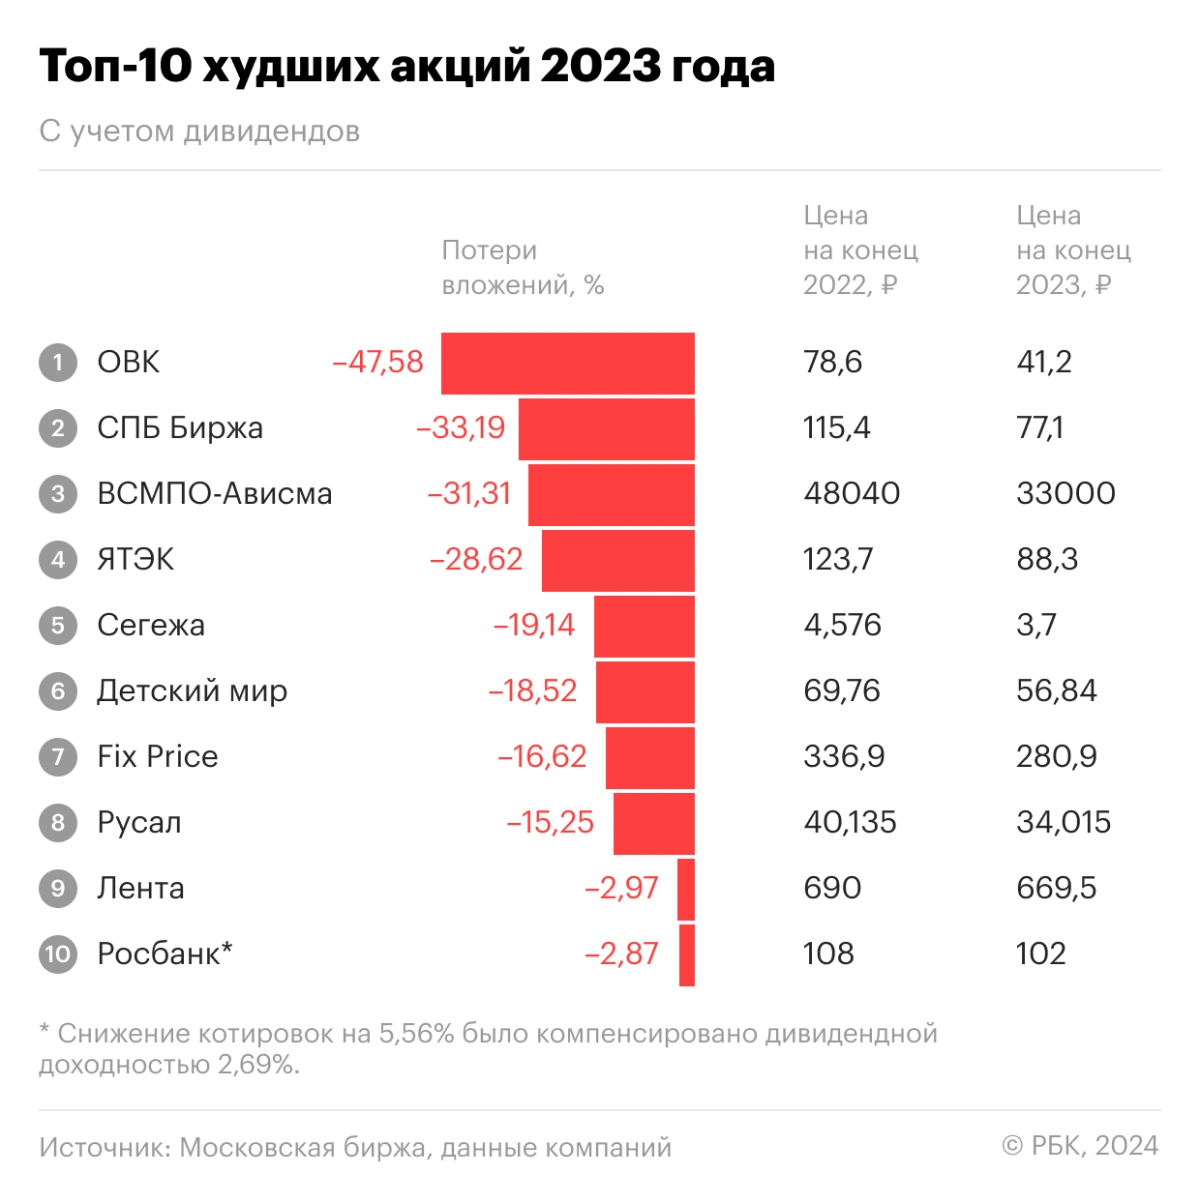 <p>Аутсайдеры российского рынка акций в 2023 году с учетом дивидендных выплат</p>